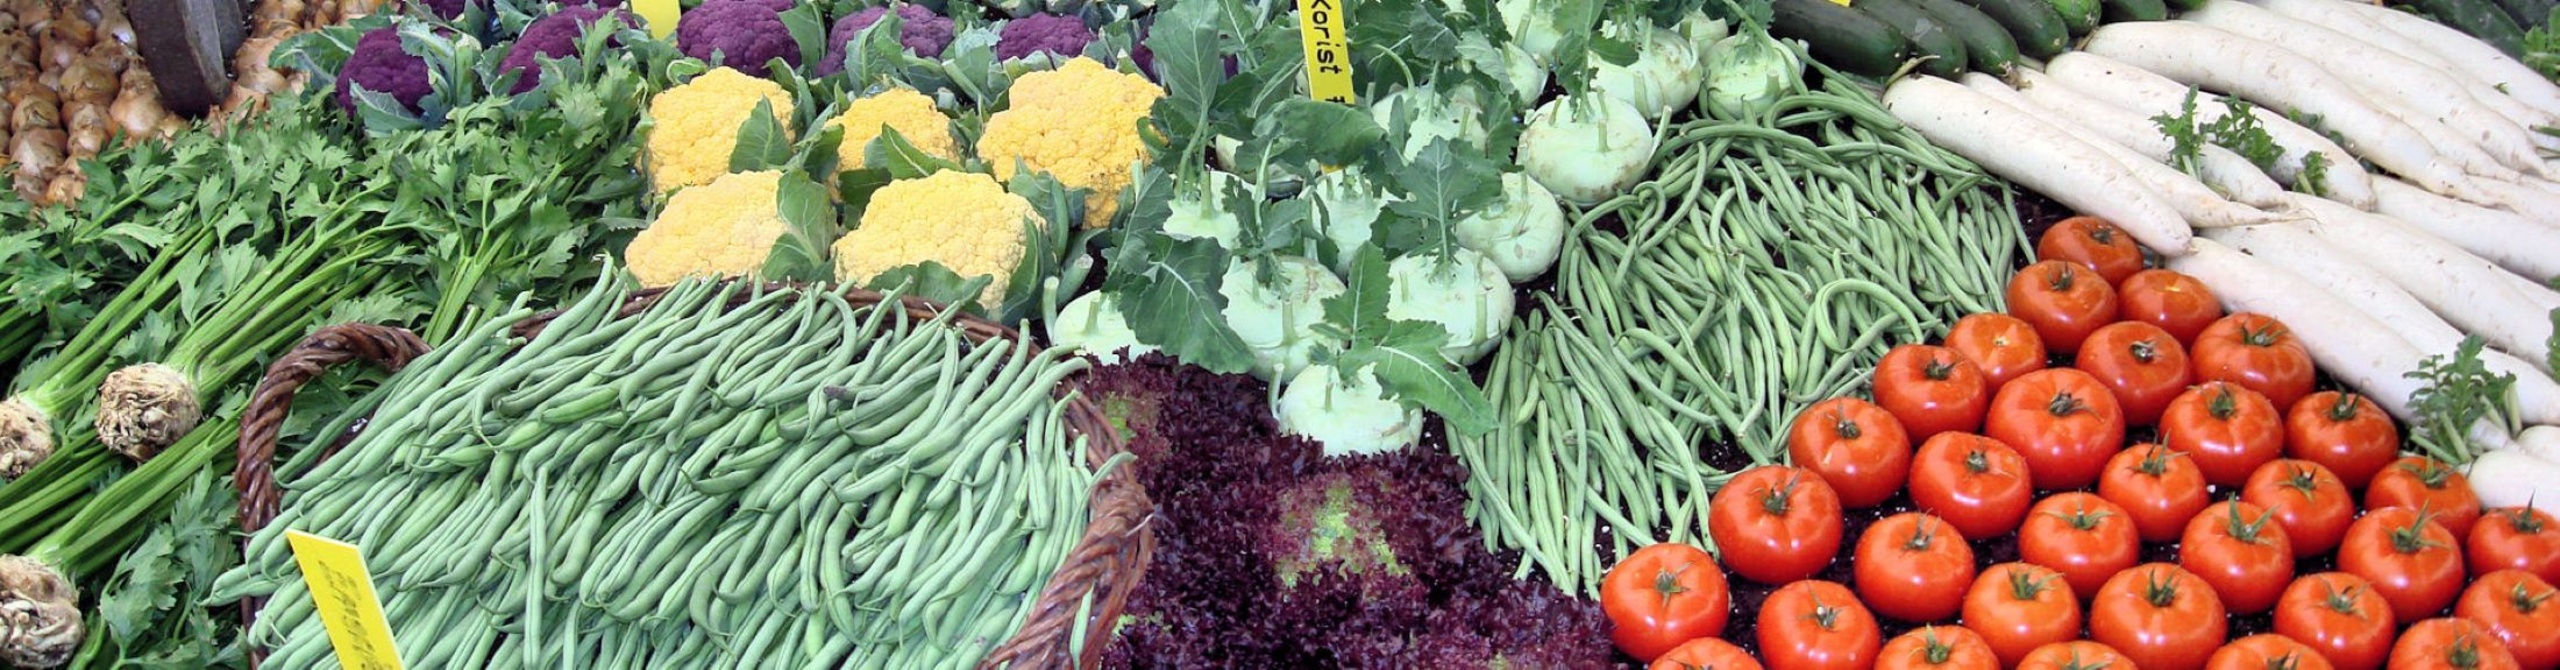 Gemüse, Salate, Früchte - Handelsprodukte